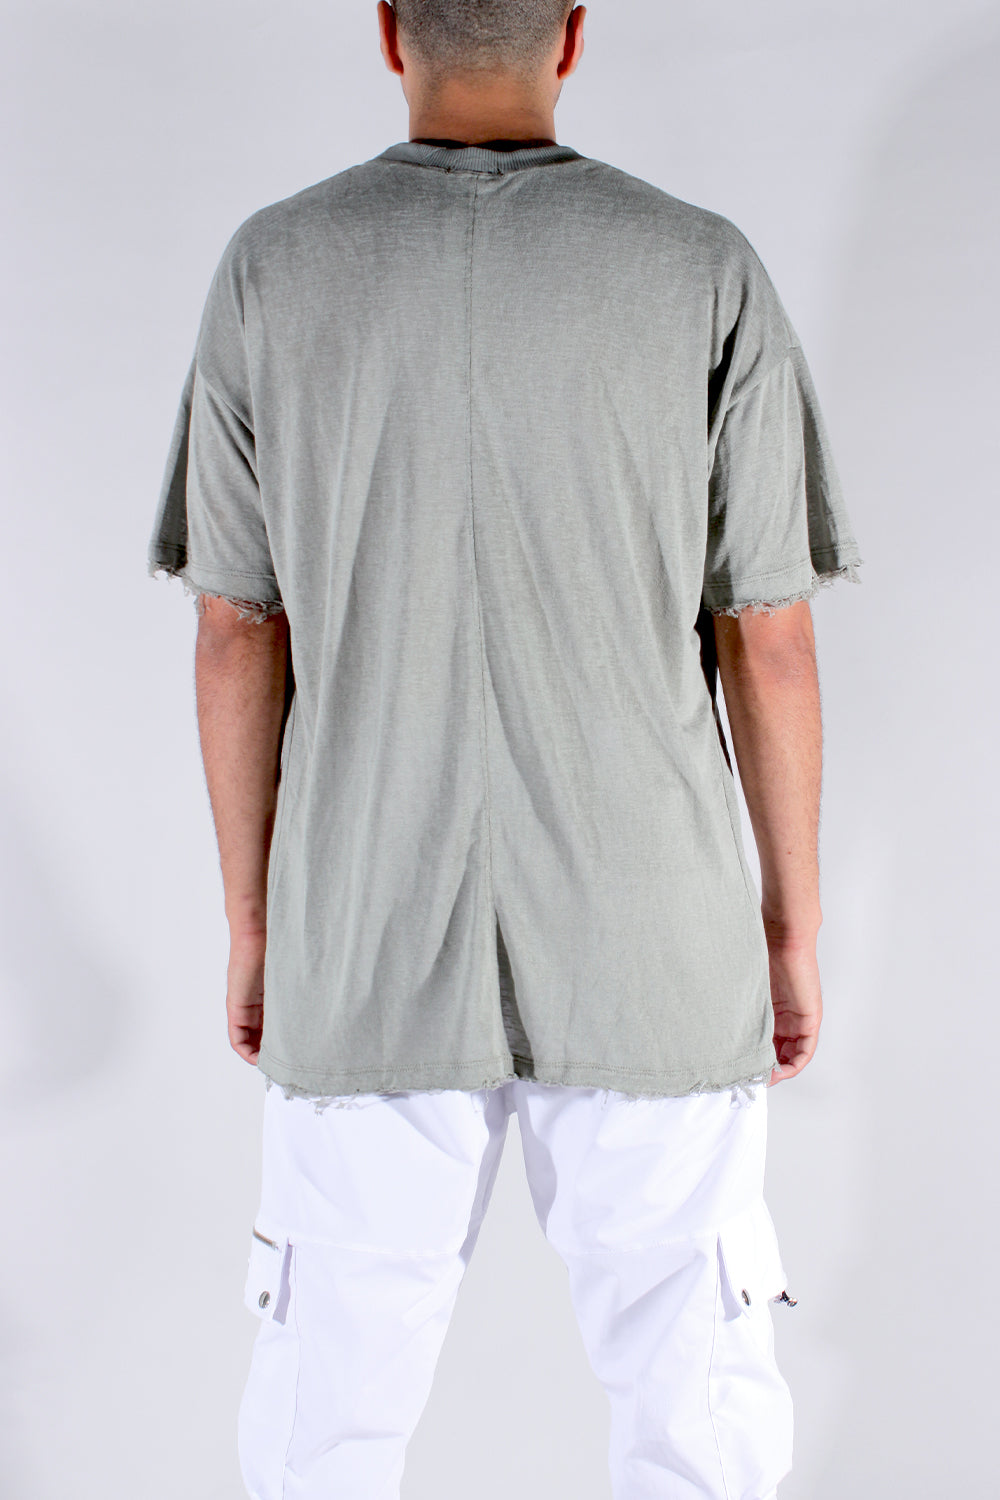 CREW Milano TULUM Green Mint Linen T-Shirt